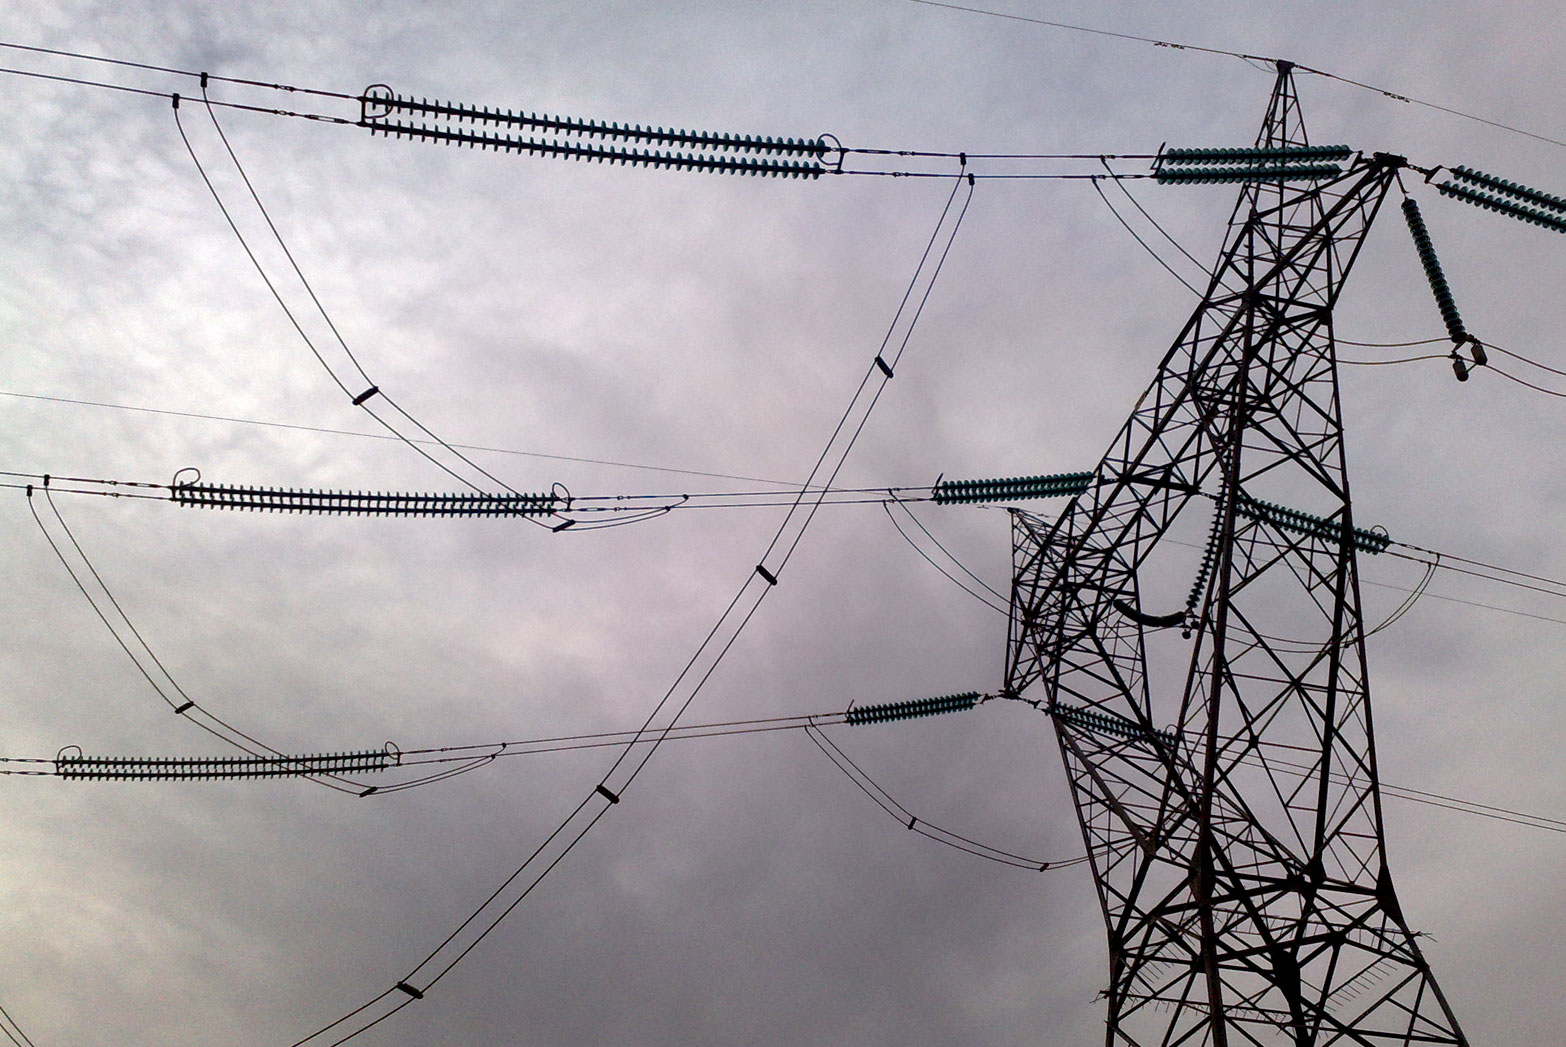 وزارت نیرو در ترمیم خطوط انتقال برق کوتاهی می‌کند/ بی‌توجهی شرکت برق قابل انکار نیست